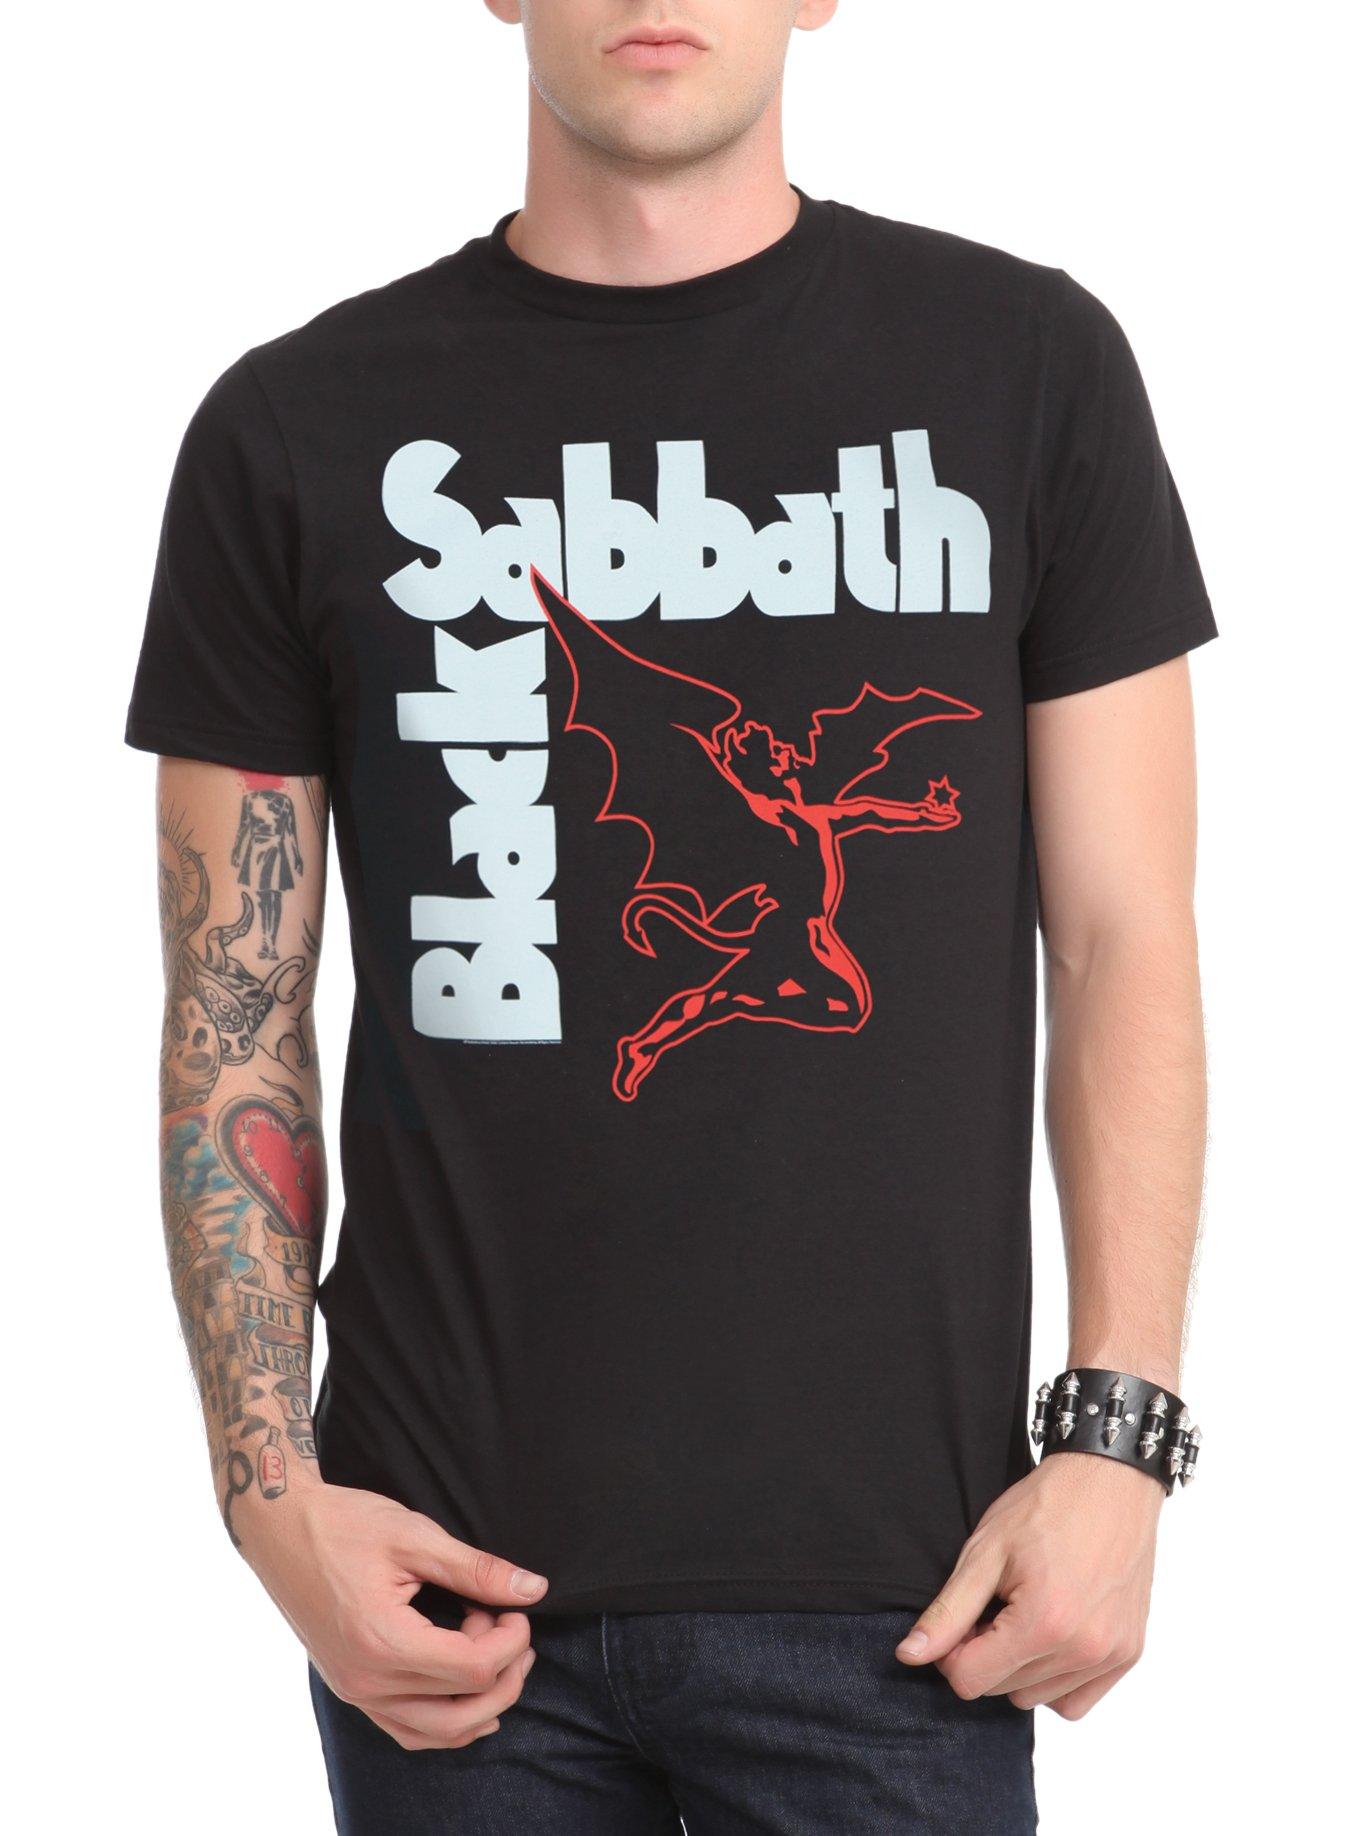 Black Sabbath Creature T-Shirt, BLACK, hi-res